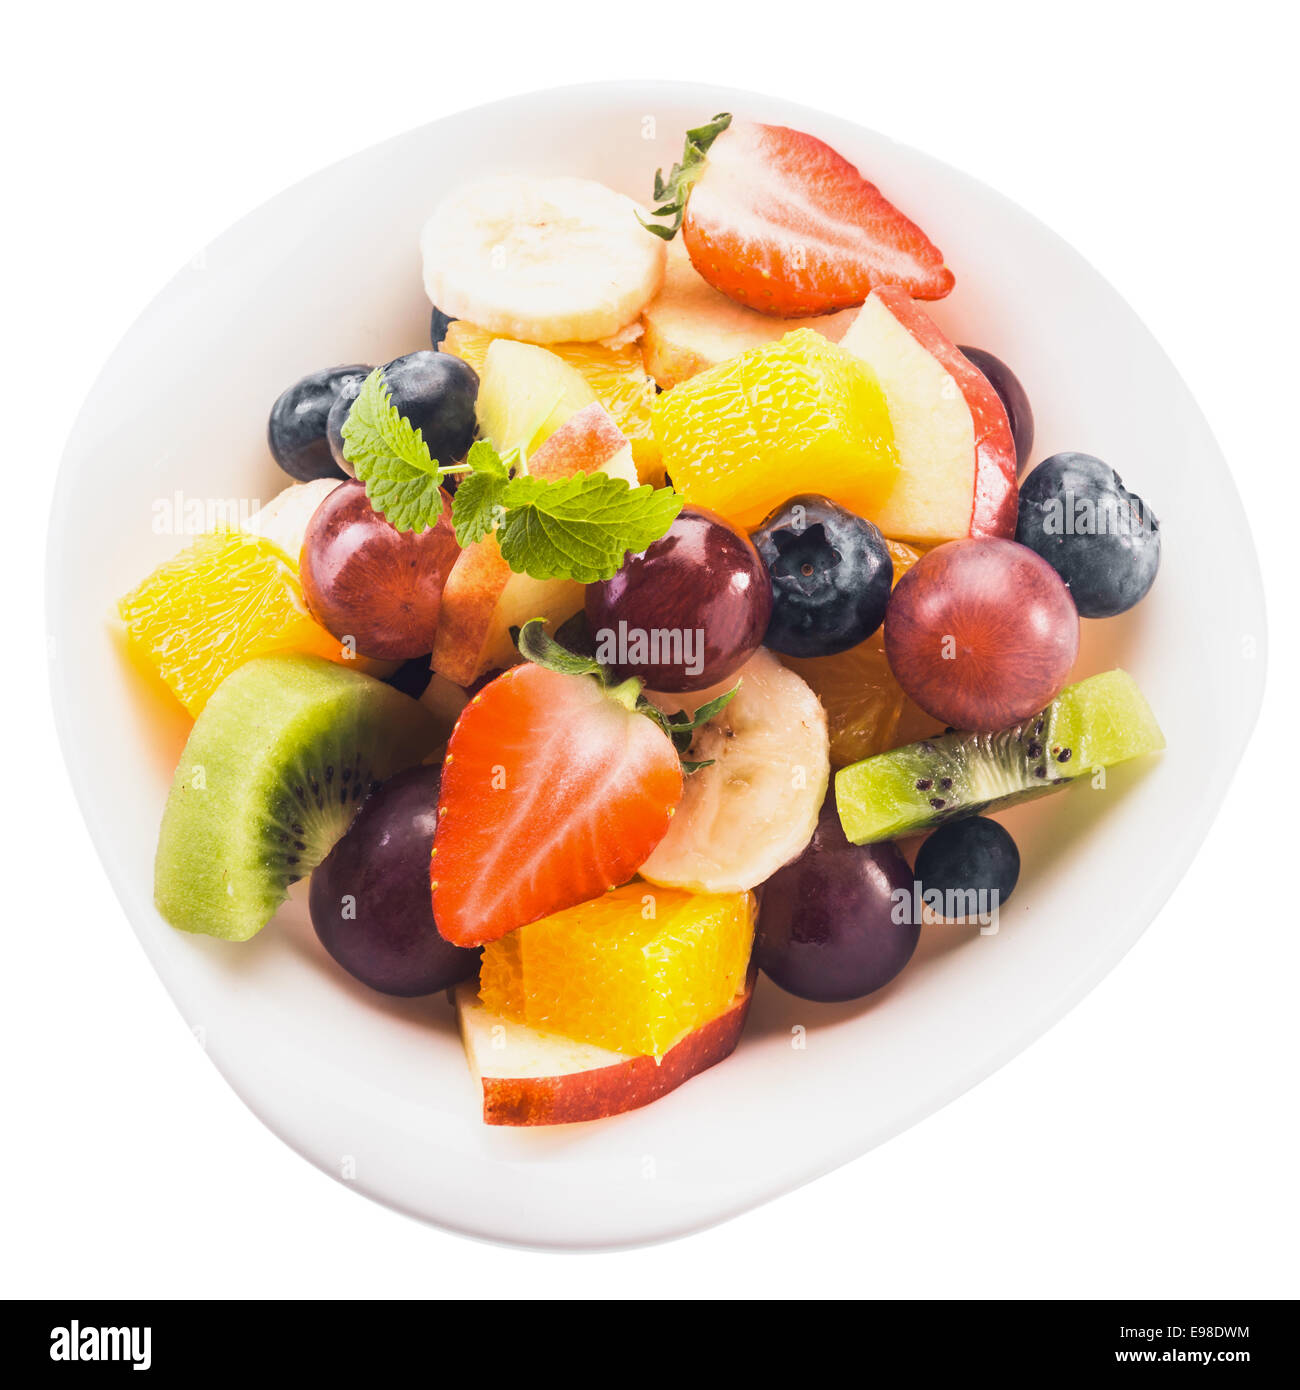 Cerrar vista desde arriba de la ensalada de frutas tropicales frescas en un recipiente con trocitos de kiwi, manzana, naranja, uva, plátano, fresas y arándanos, aislado en blanco Foto de stock